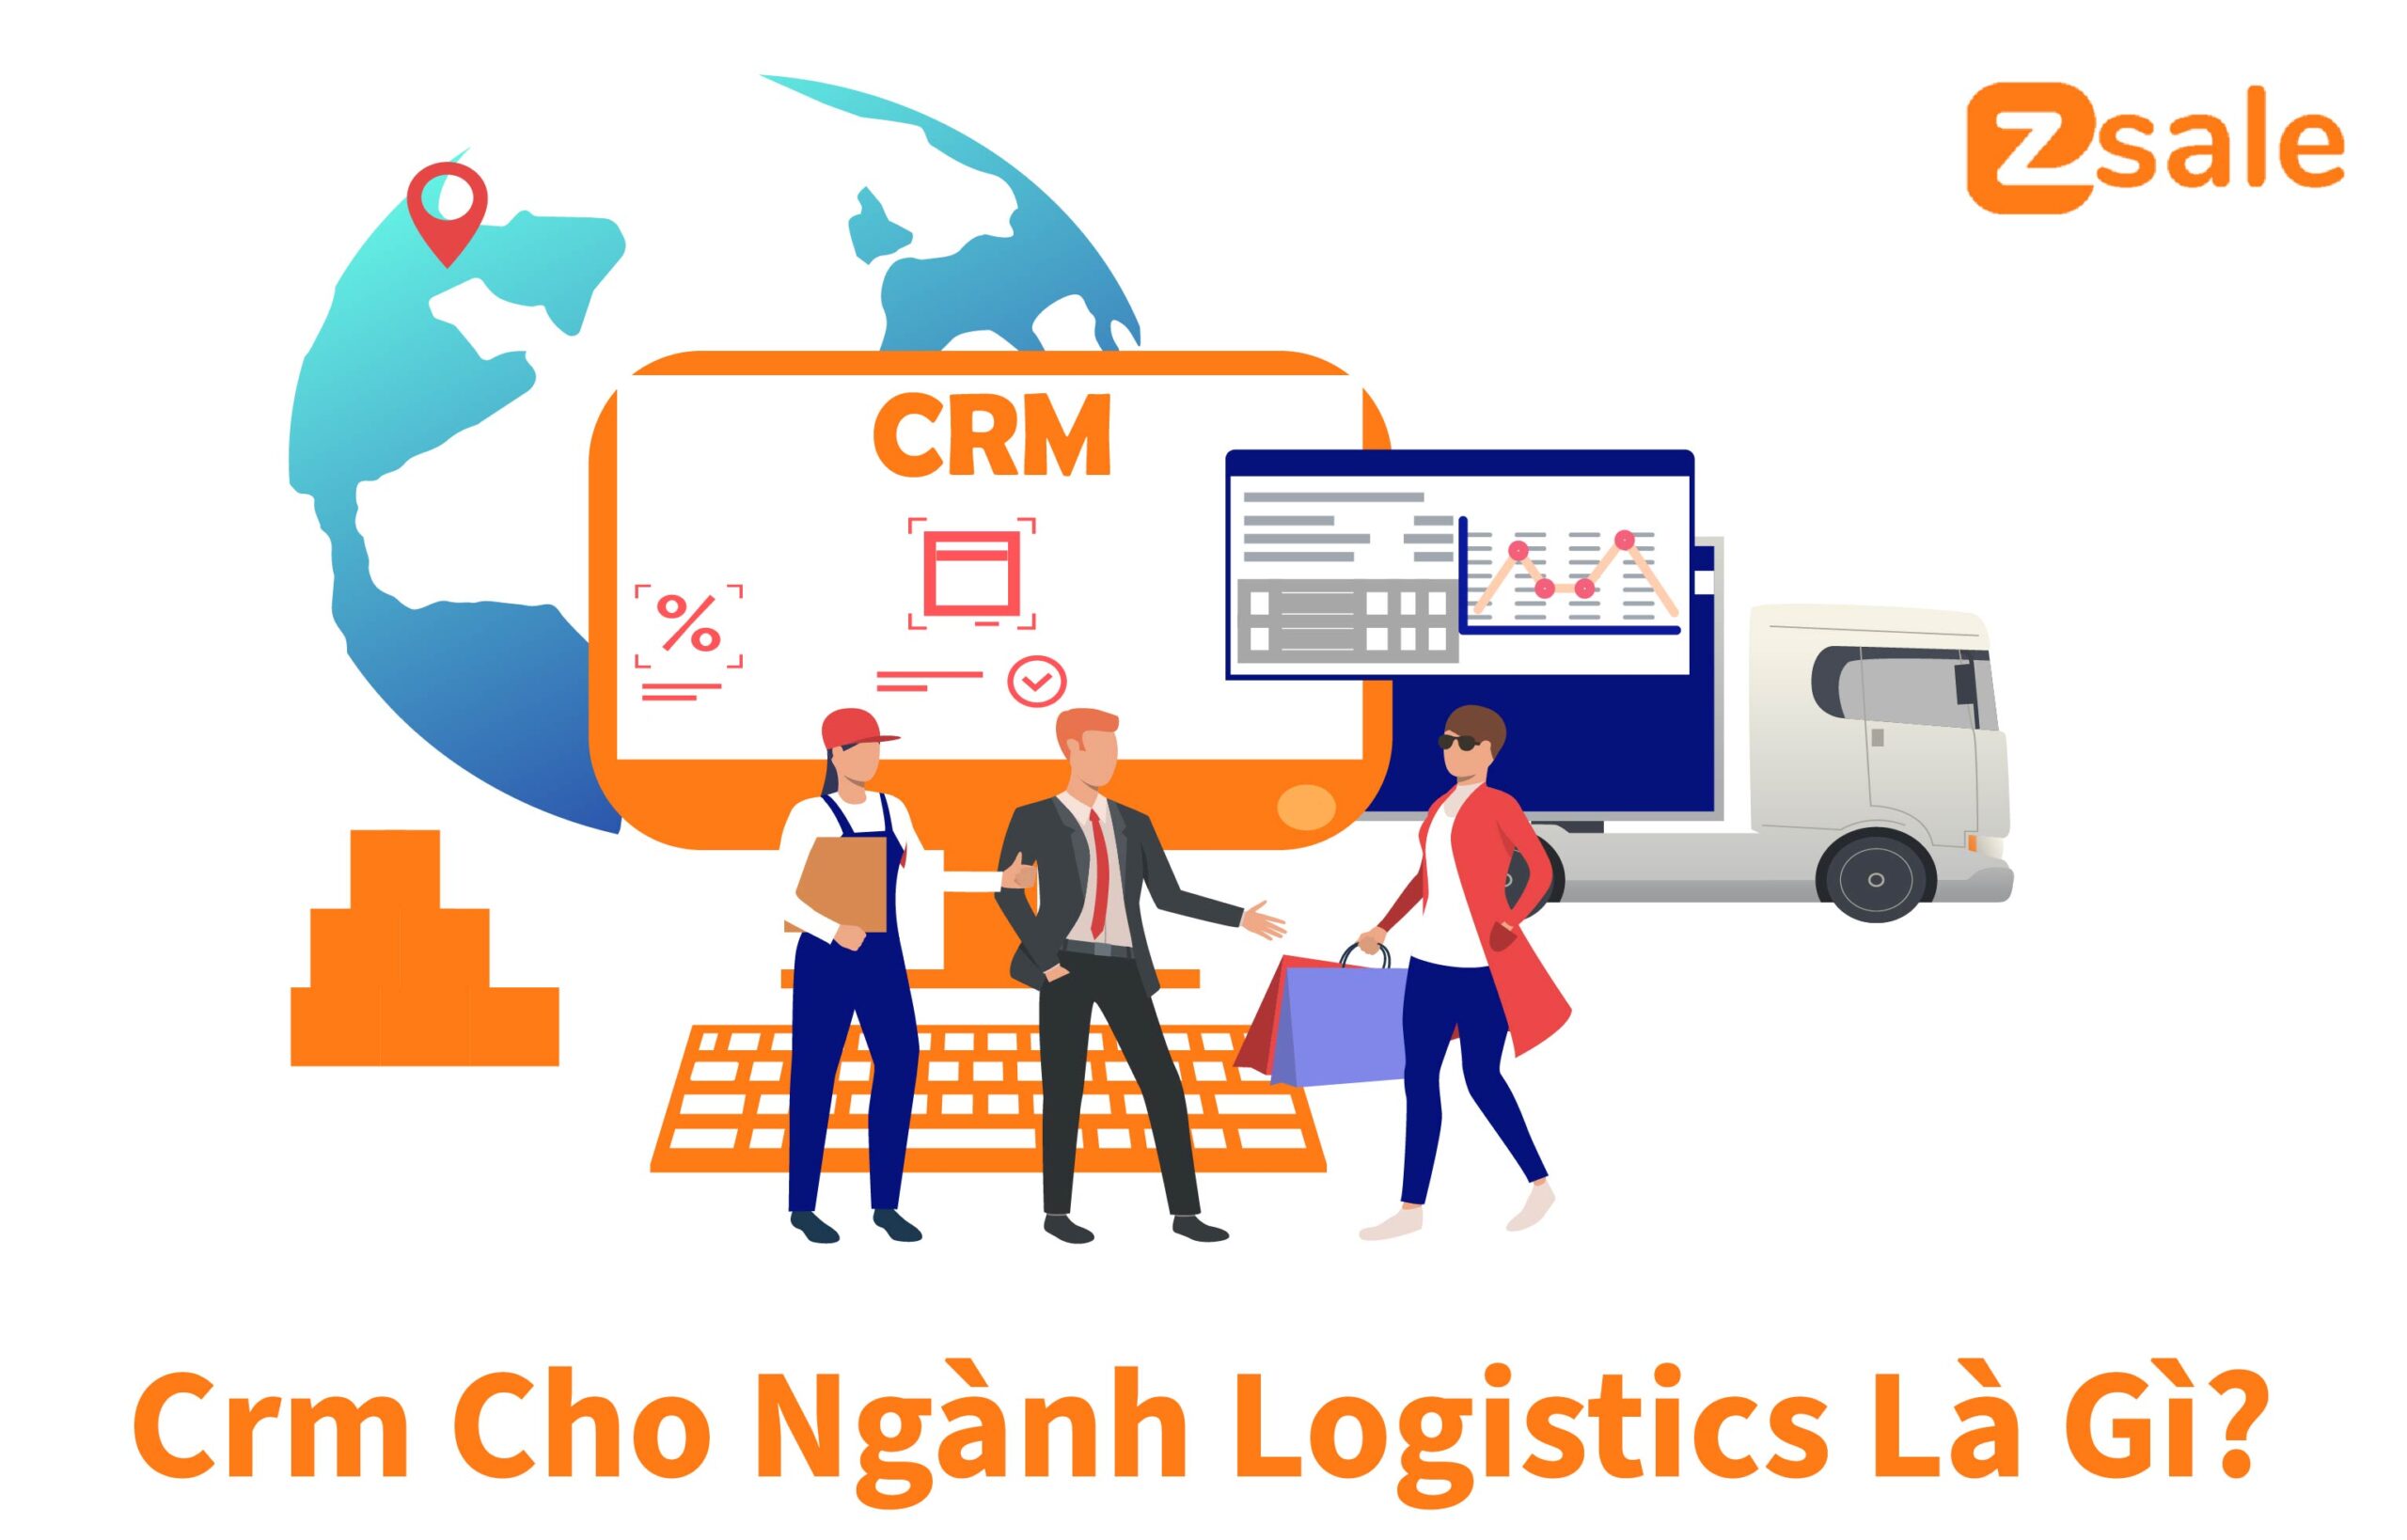 Khái niệm crm cho ngành logistics